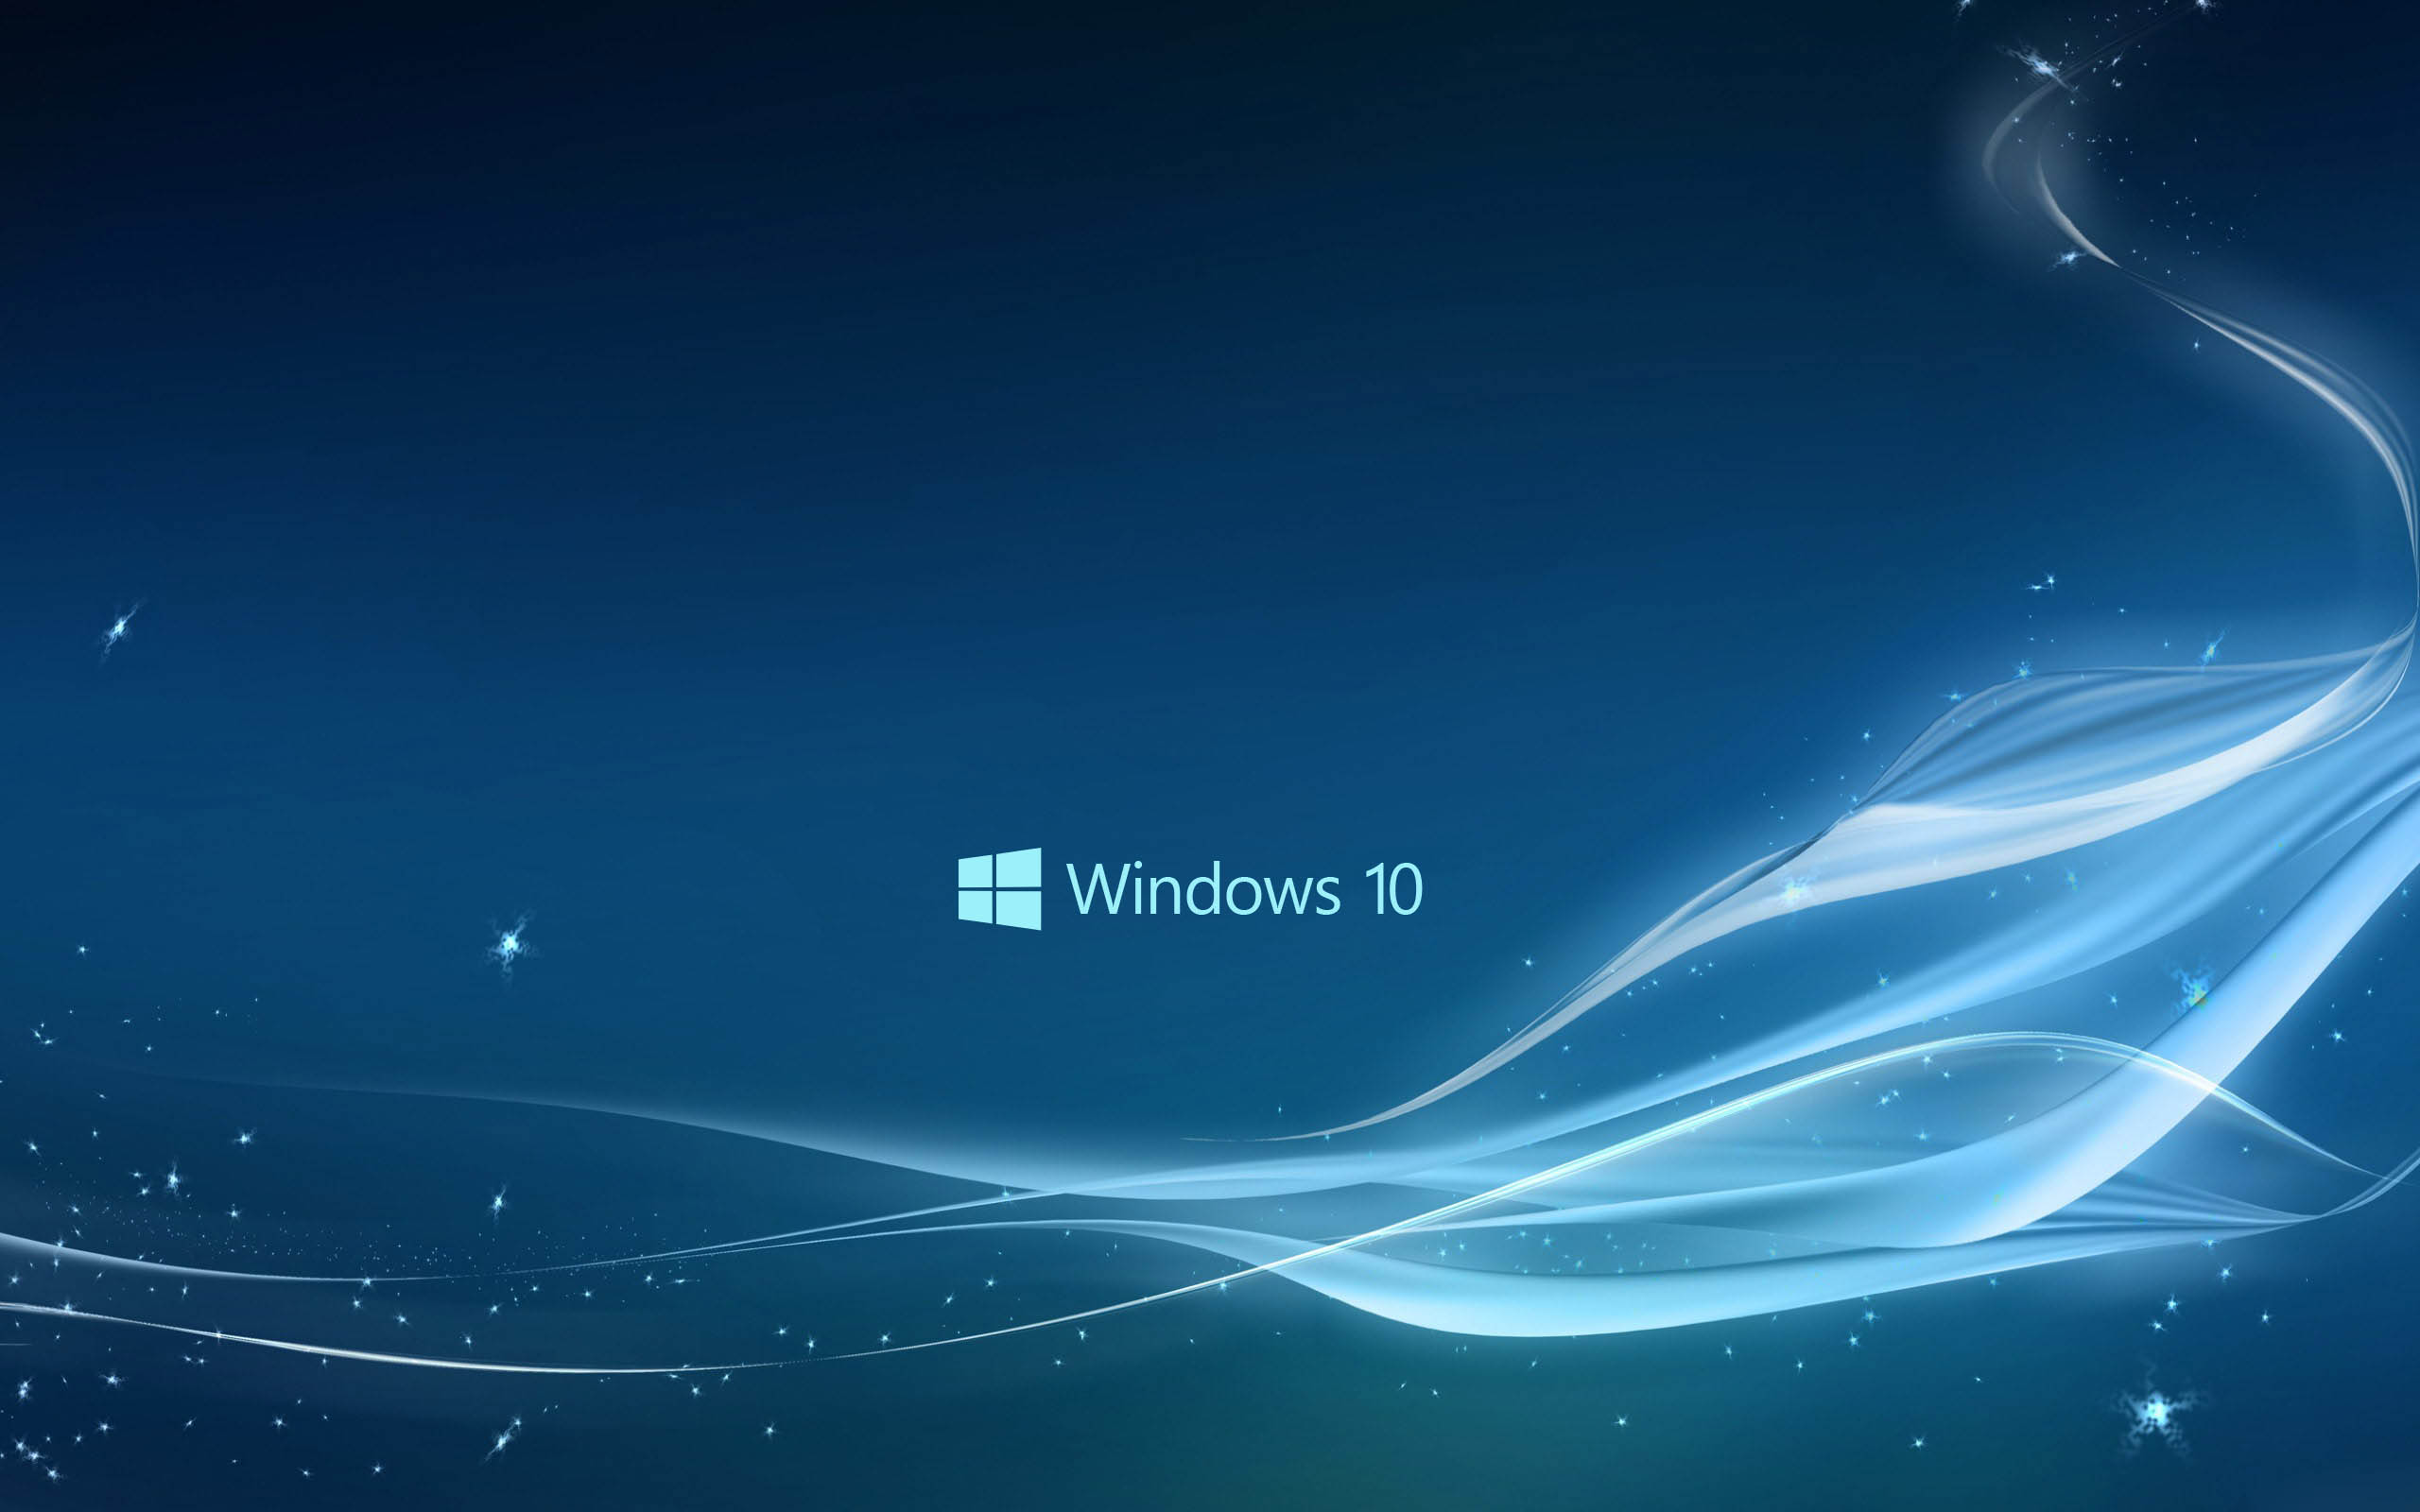 New Blue Windows 10 Wallpaper HD 12437 Wallpaper High Resolution